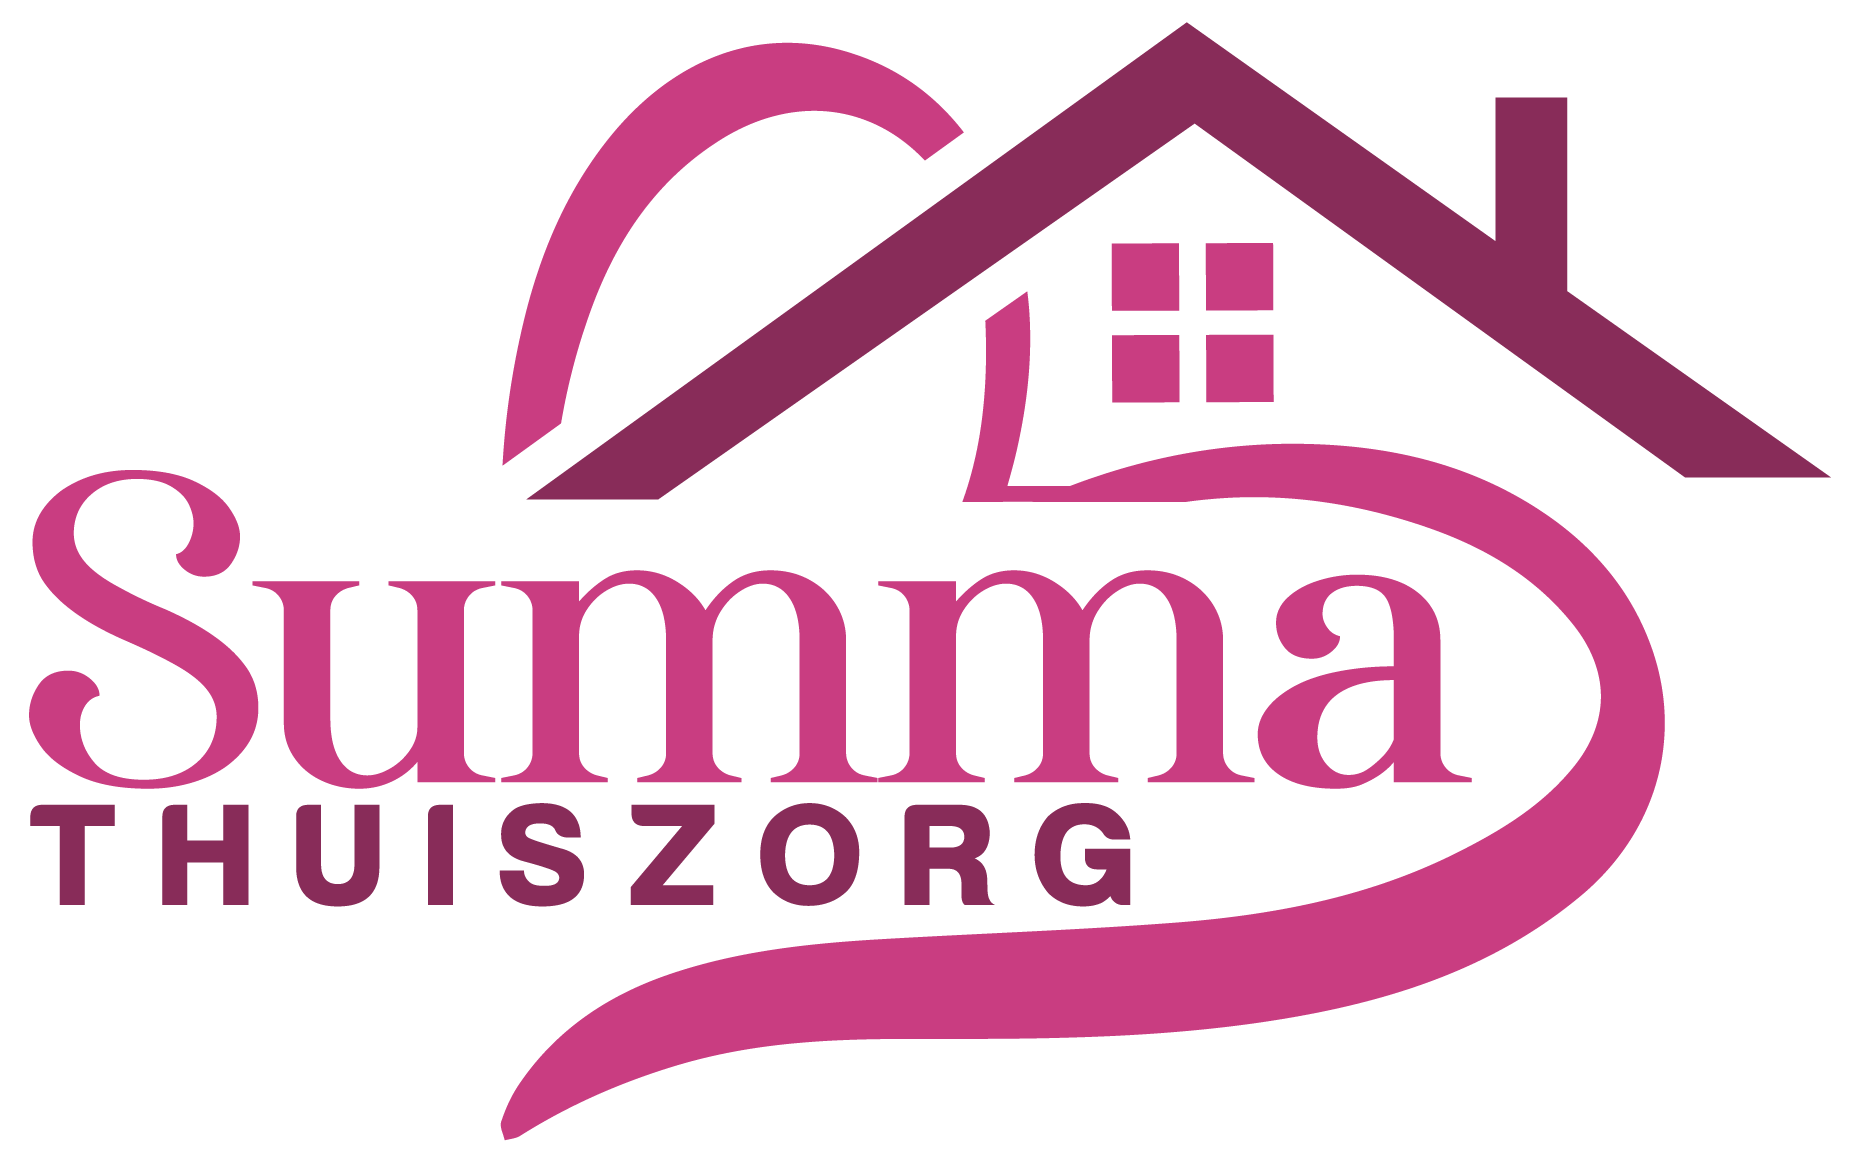 Summa thuiszorg transparent logo